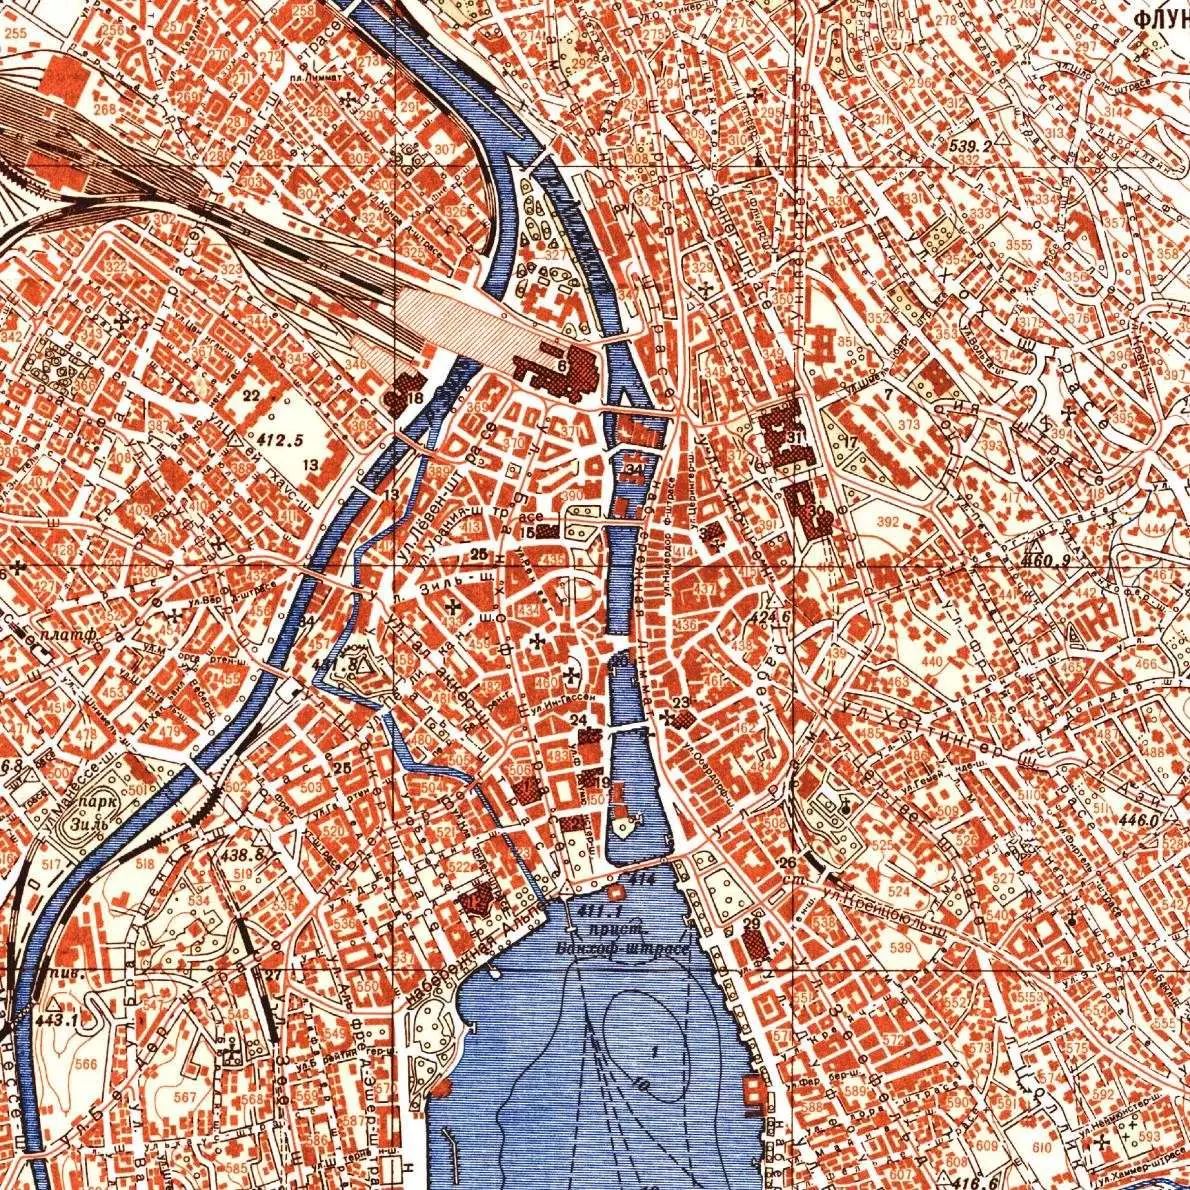 在这张苏联1983年印制的地图中,柏林墙被用紫红色标出了.